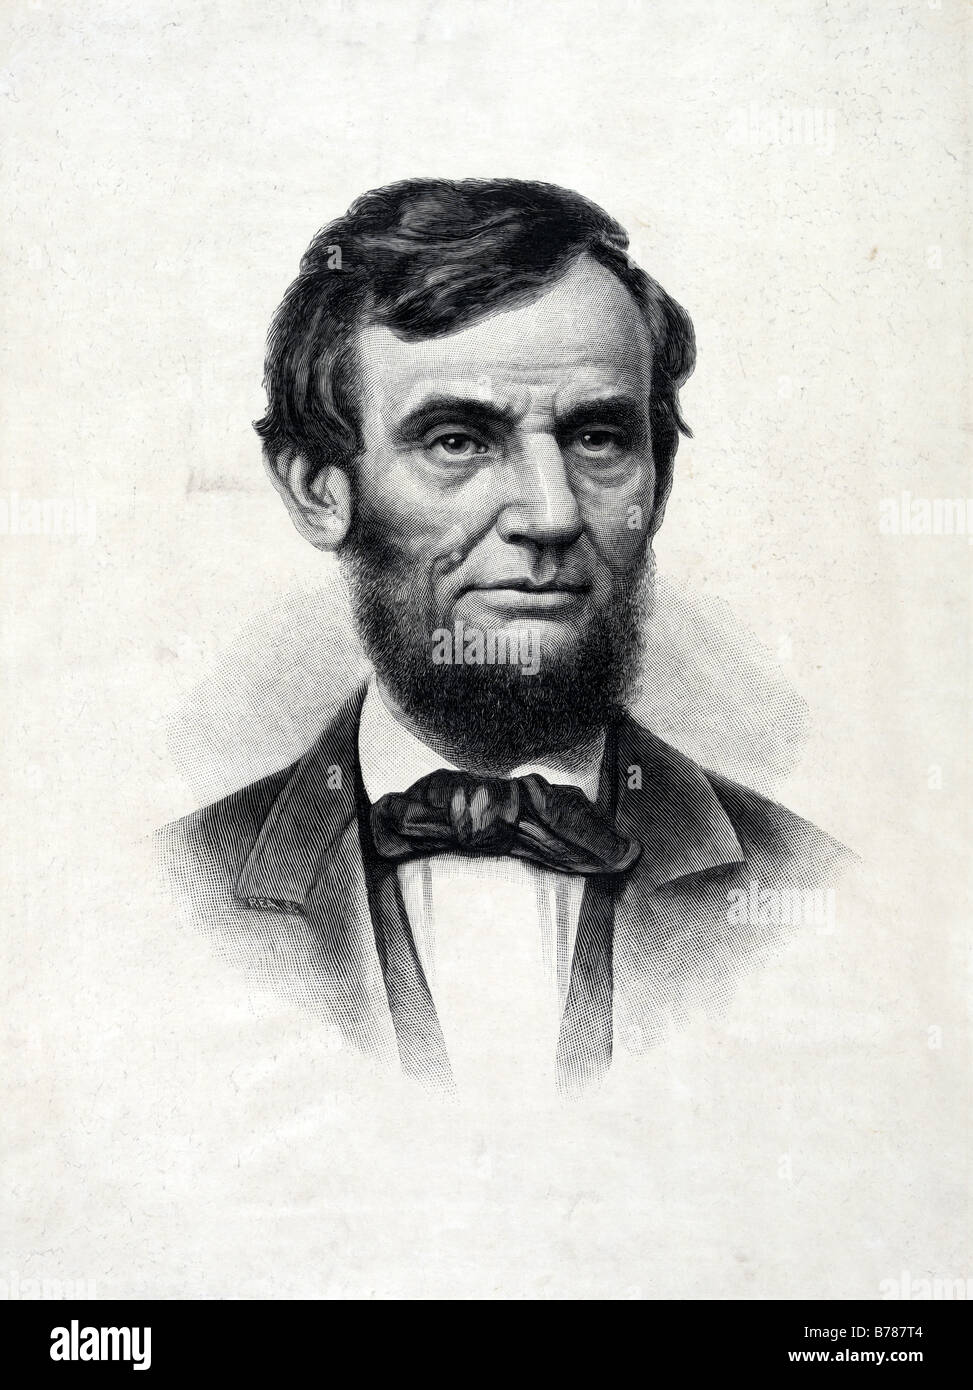 Abraham Lincoln 1809 1865 16e président des États-Unis Banque D'Images